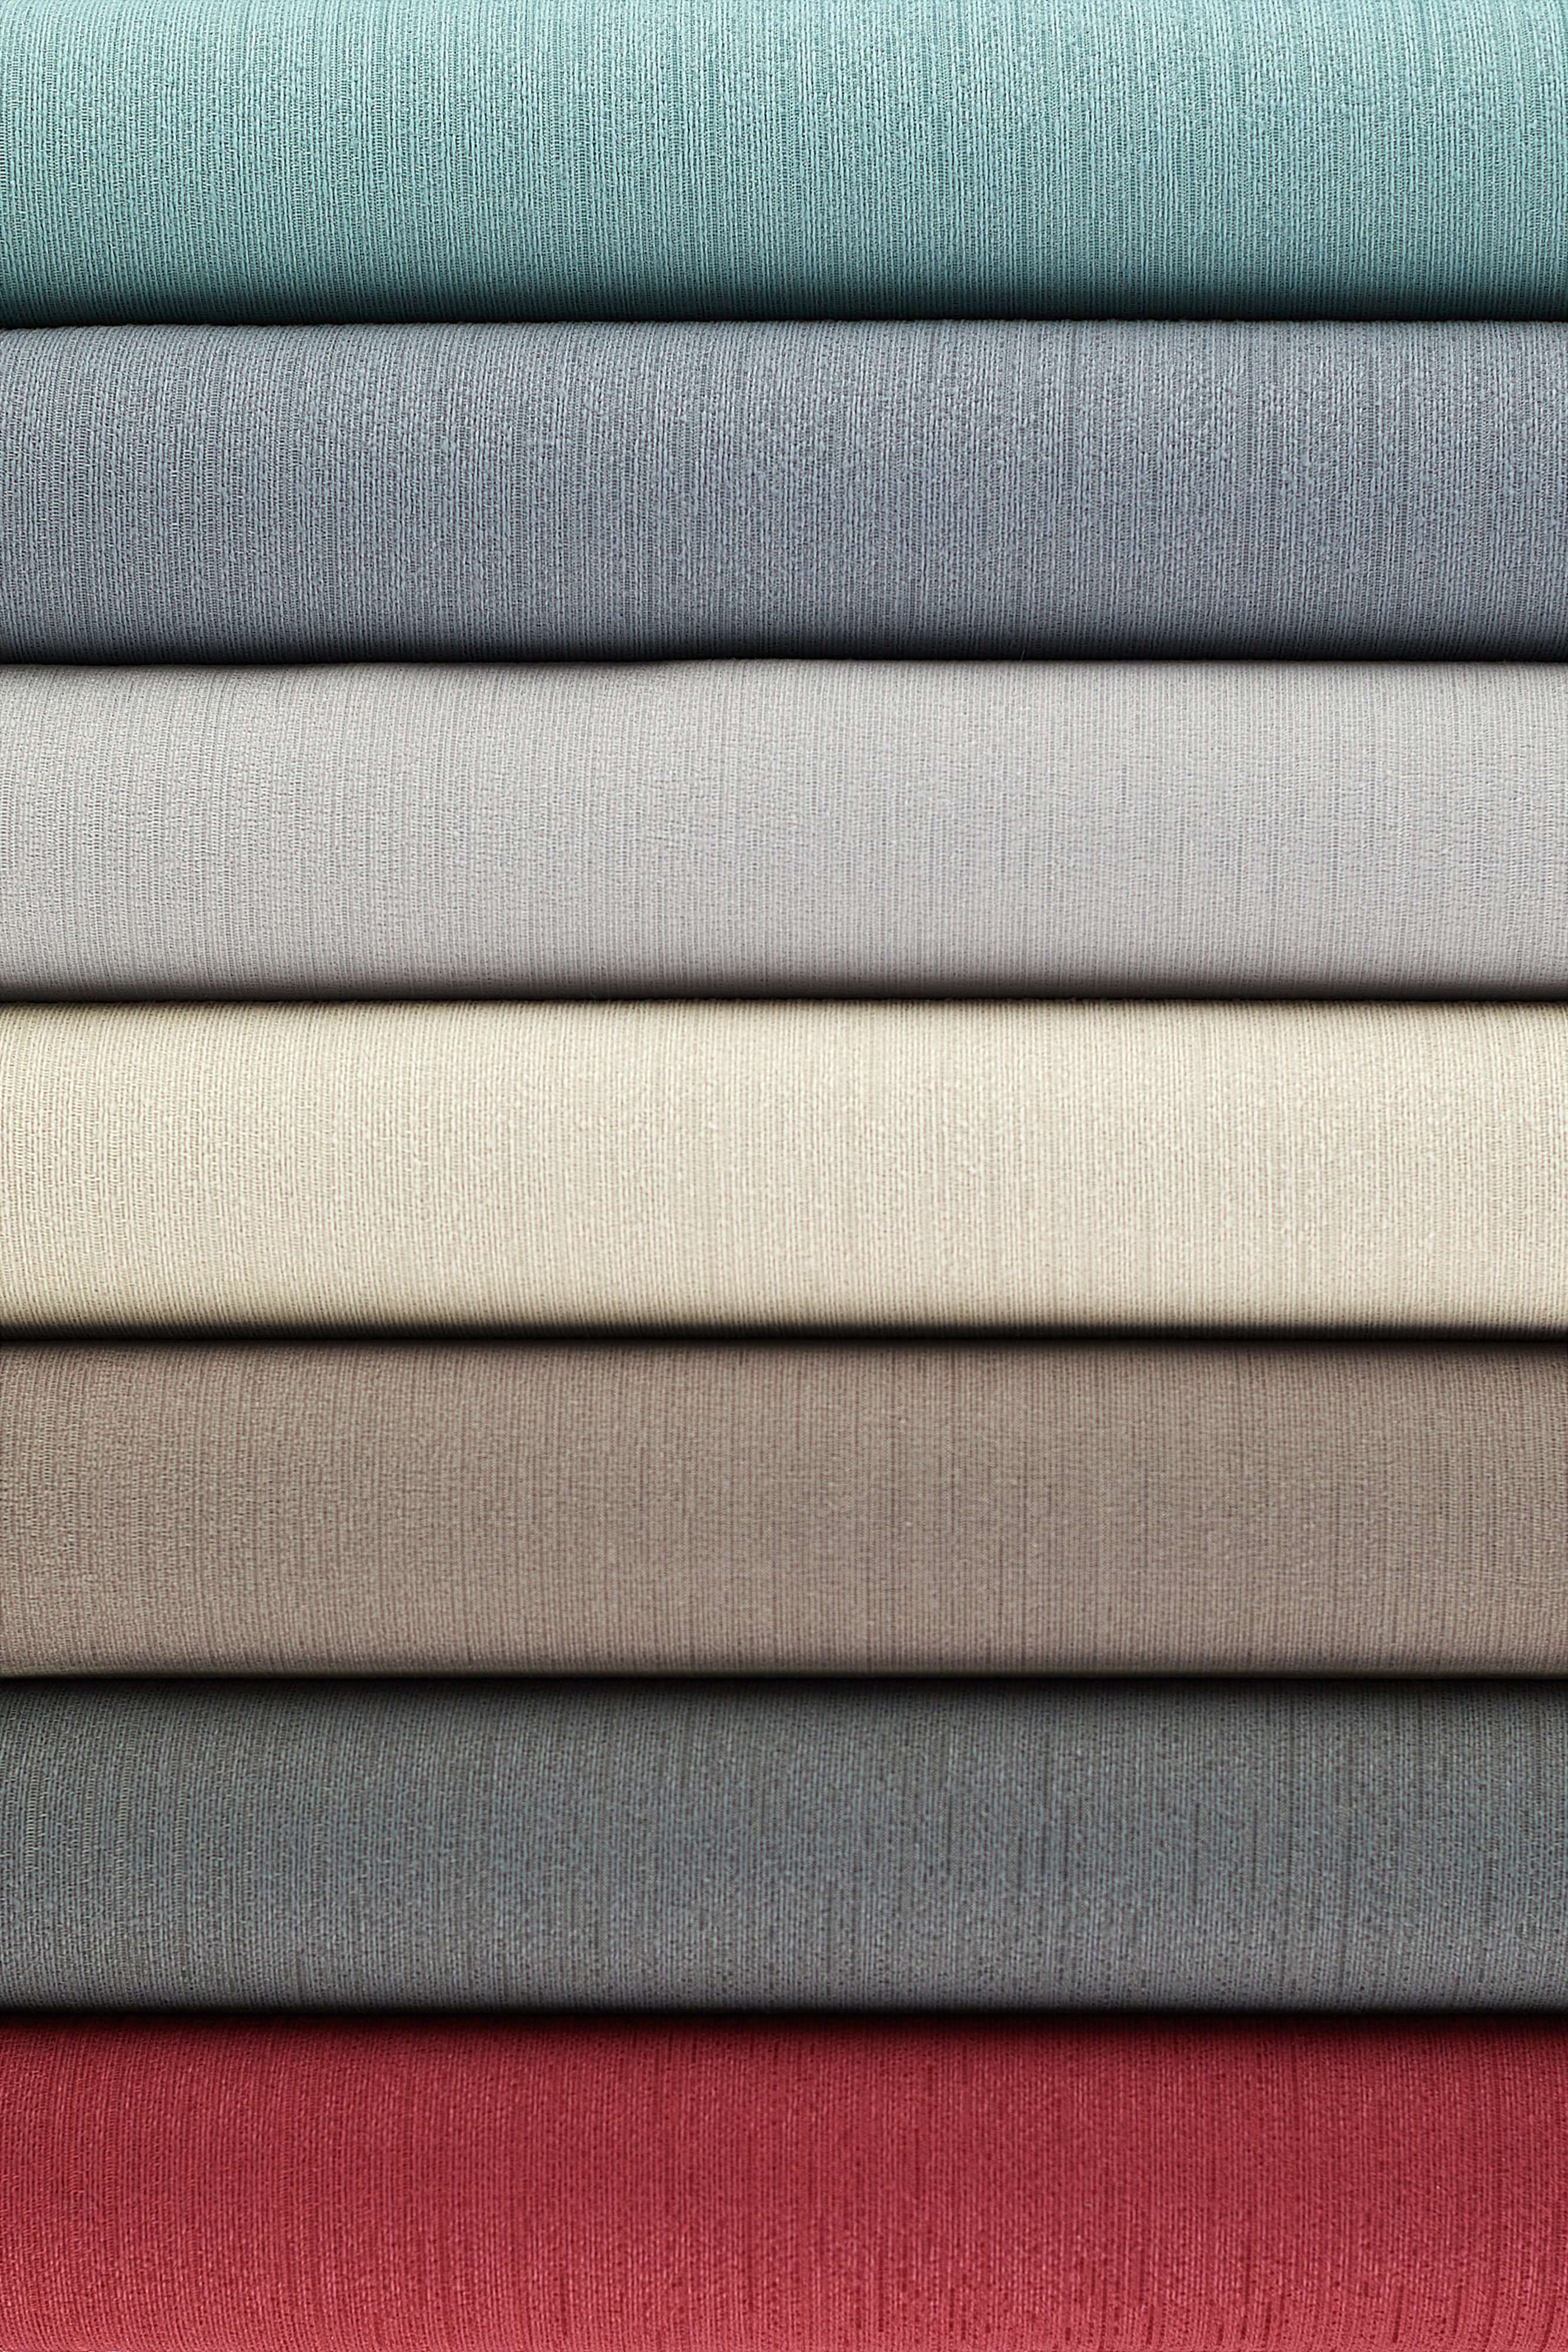 McAlister Textiles Sakai Natural FR Plain Fabric Fabrics 